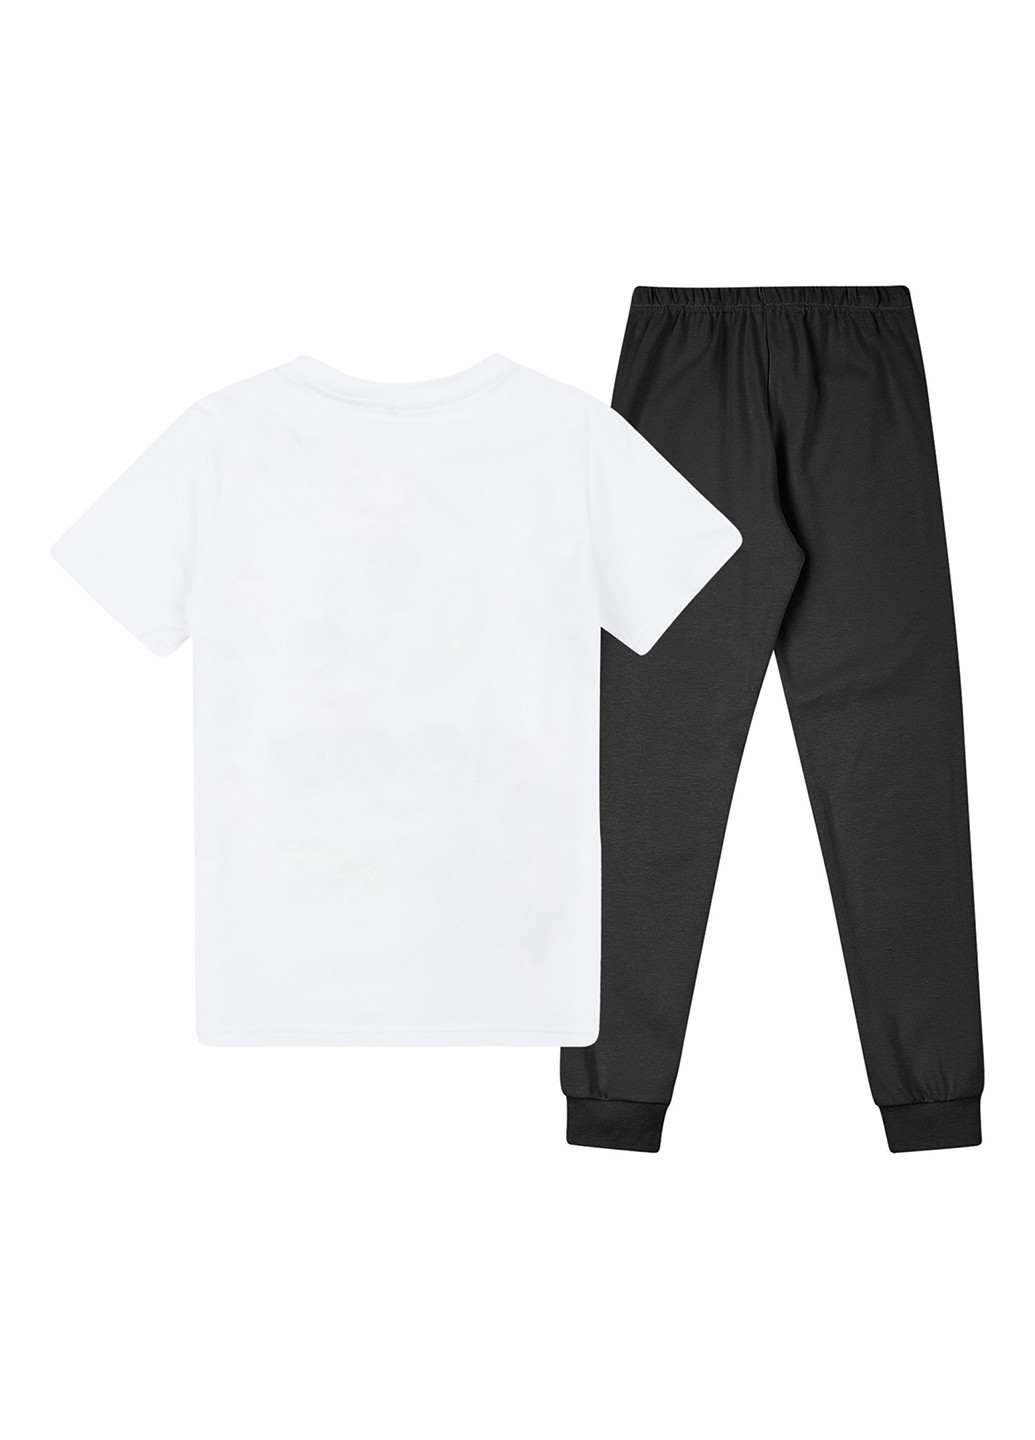 Комбинированная всесезон пижама (футболка, брюки) футболка + брюки Garnamama